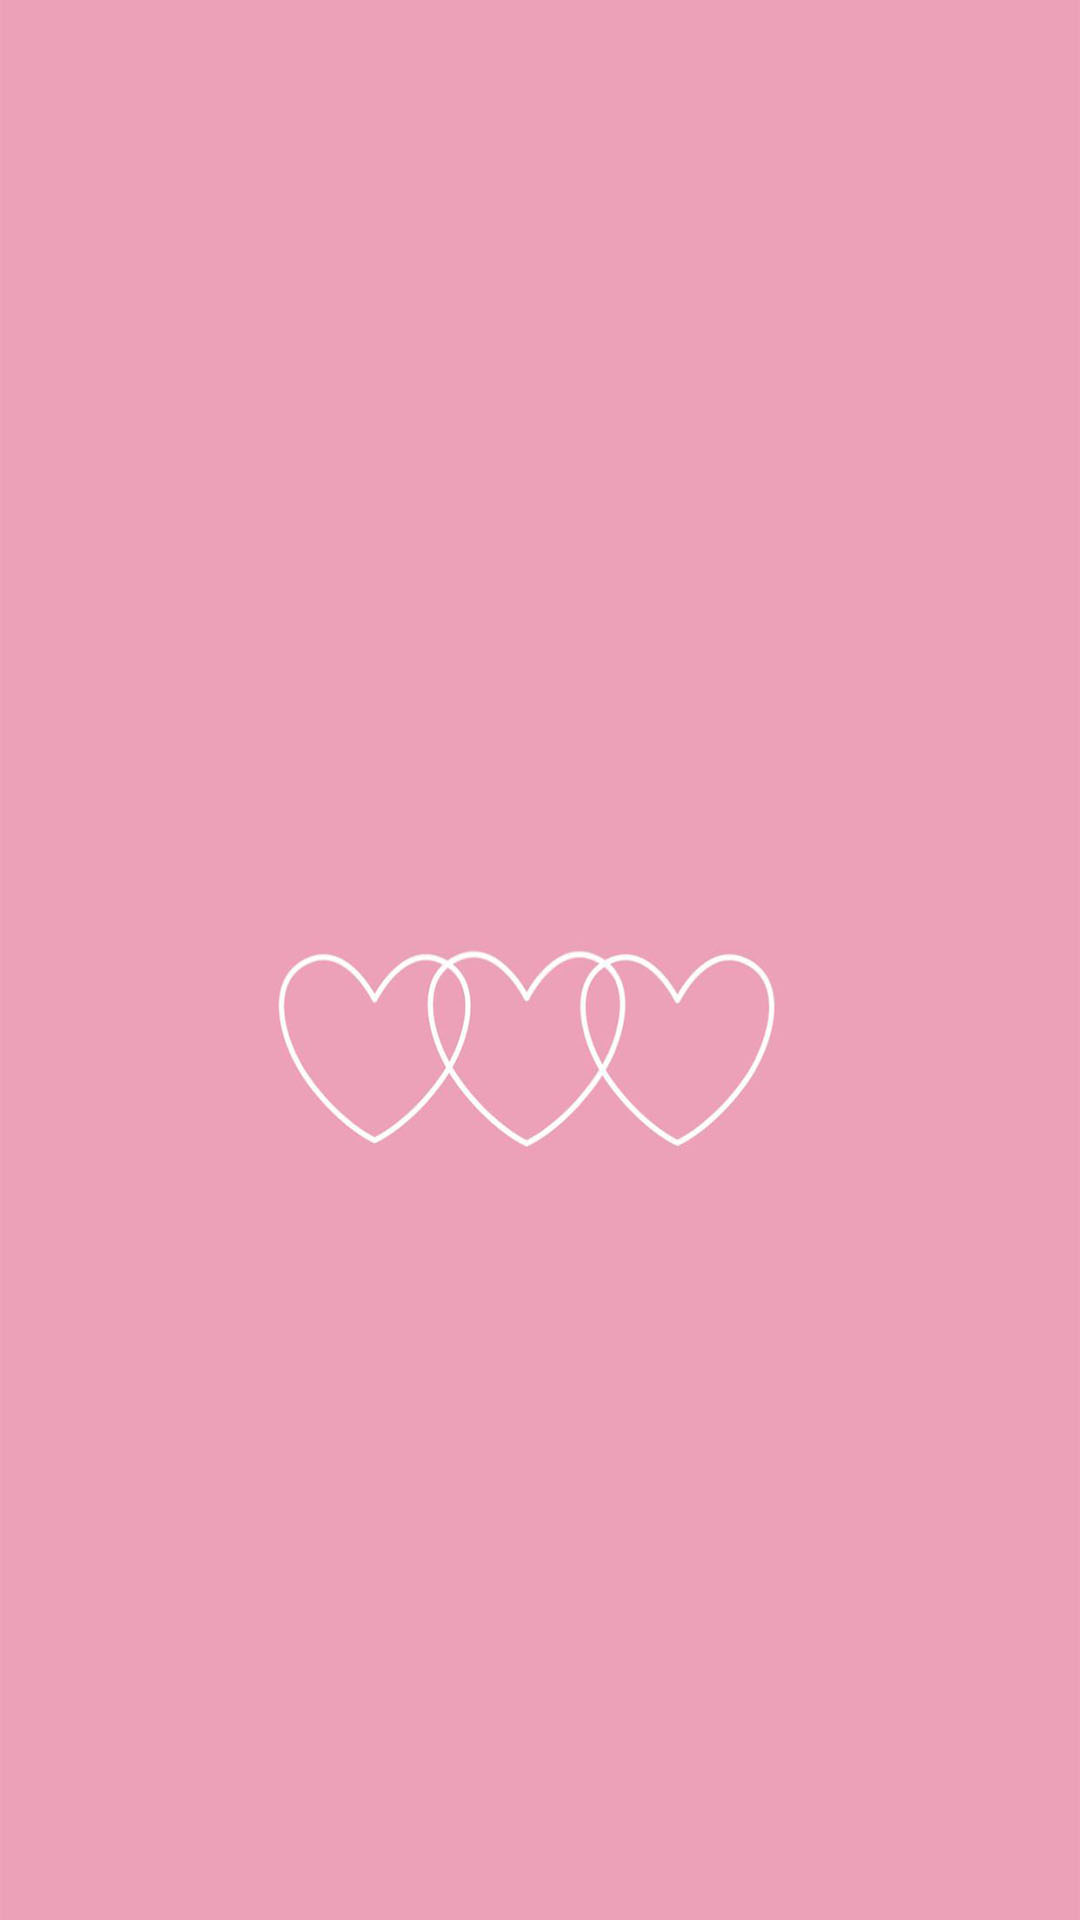 Hình nền caro hồng tuyệt vời sẽ khiến trang trí màn hình của bạn trở nên thật lung linh và đầy sức sống. Sử dụng hình nền này, bạn sẽ cảm thấy ngập tràn sự tự tin, năng động và tràn đầy sức sống. (Translation: Amazing pink plaid wallpaper will make your screen decoration really sparkling and lively. Using this wallpaper, you will feel full of confidence, vitality, and energy.)